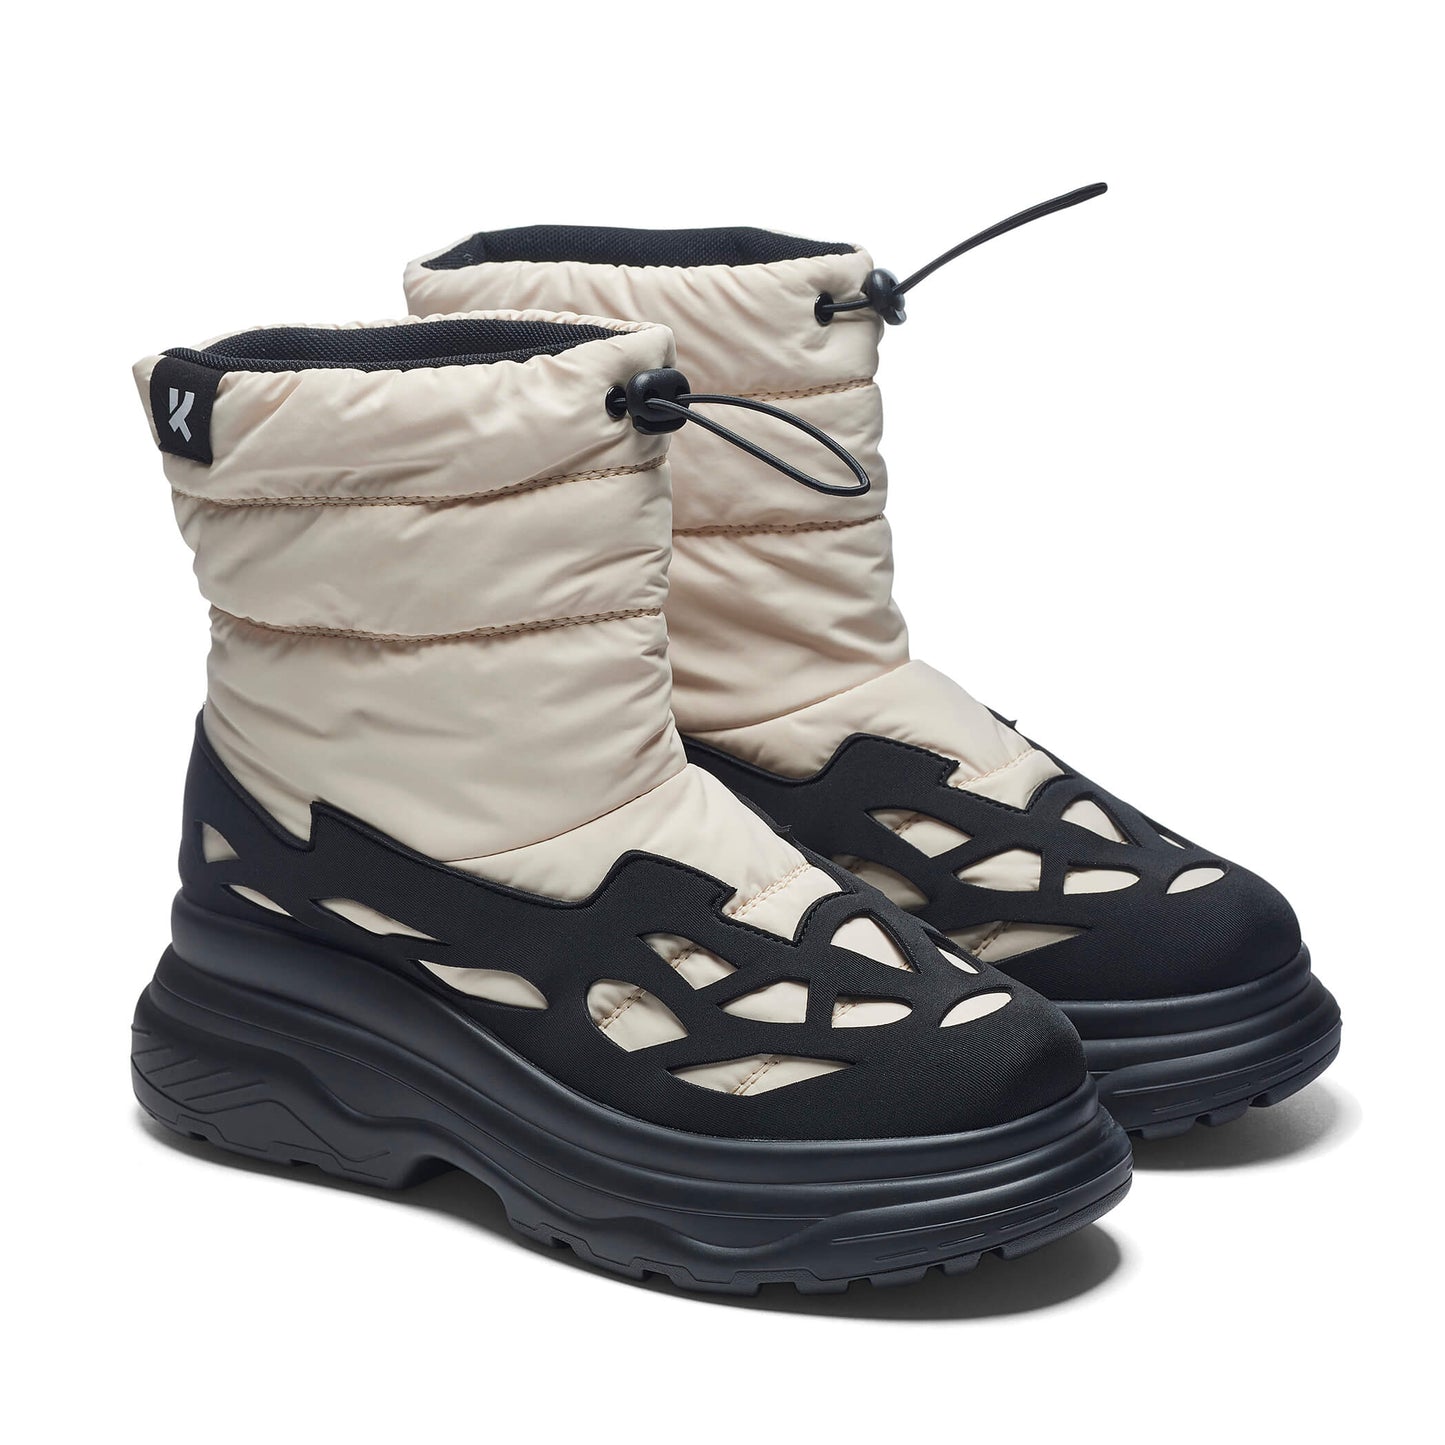 Broken Helm Men's Snow Boots - Cream